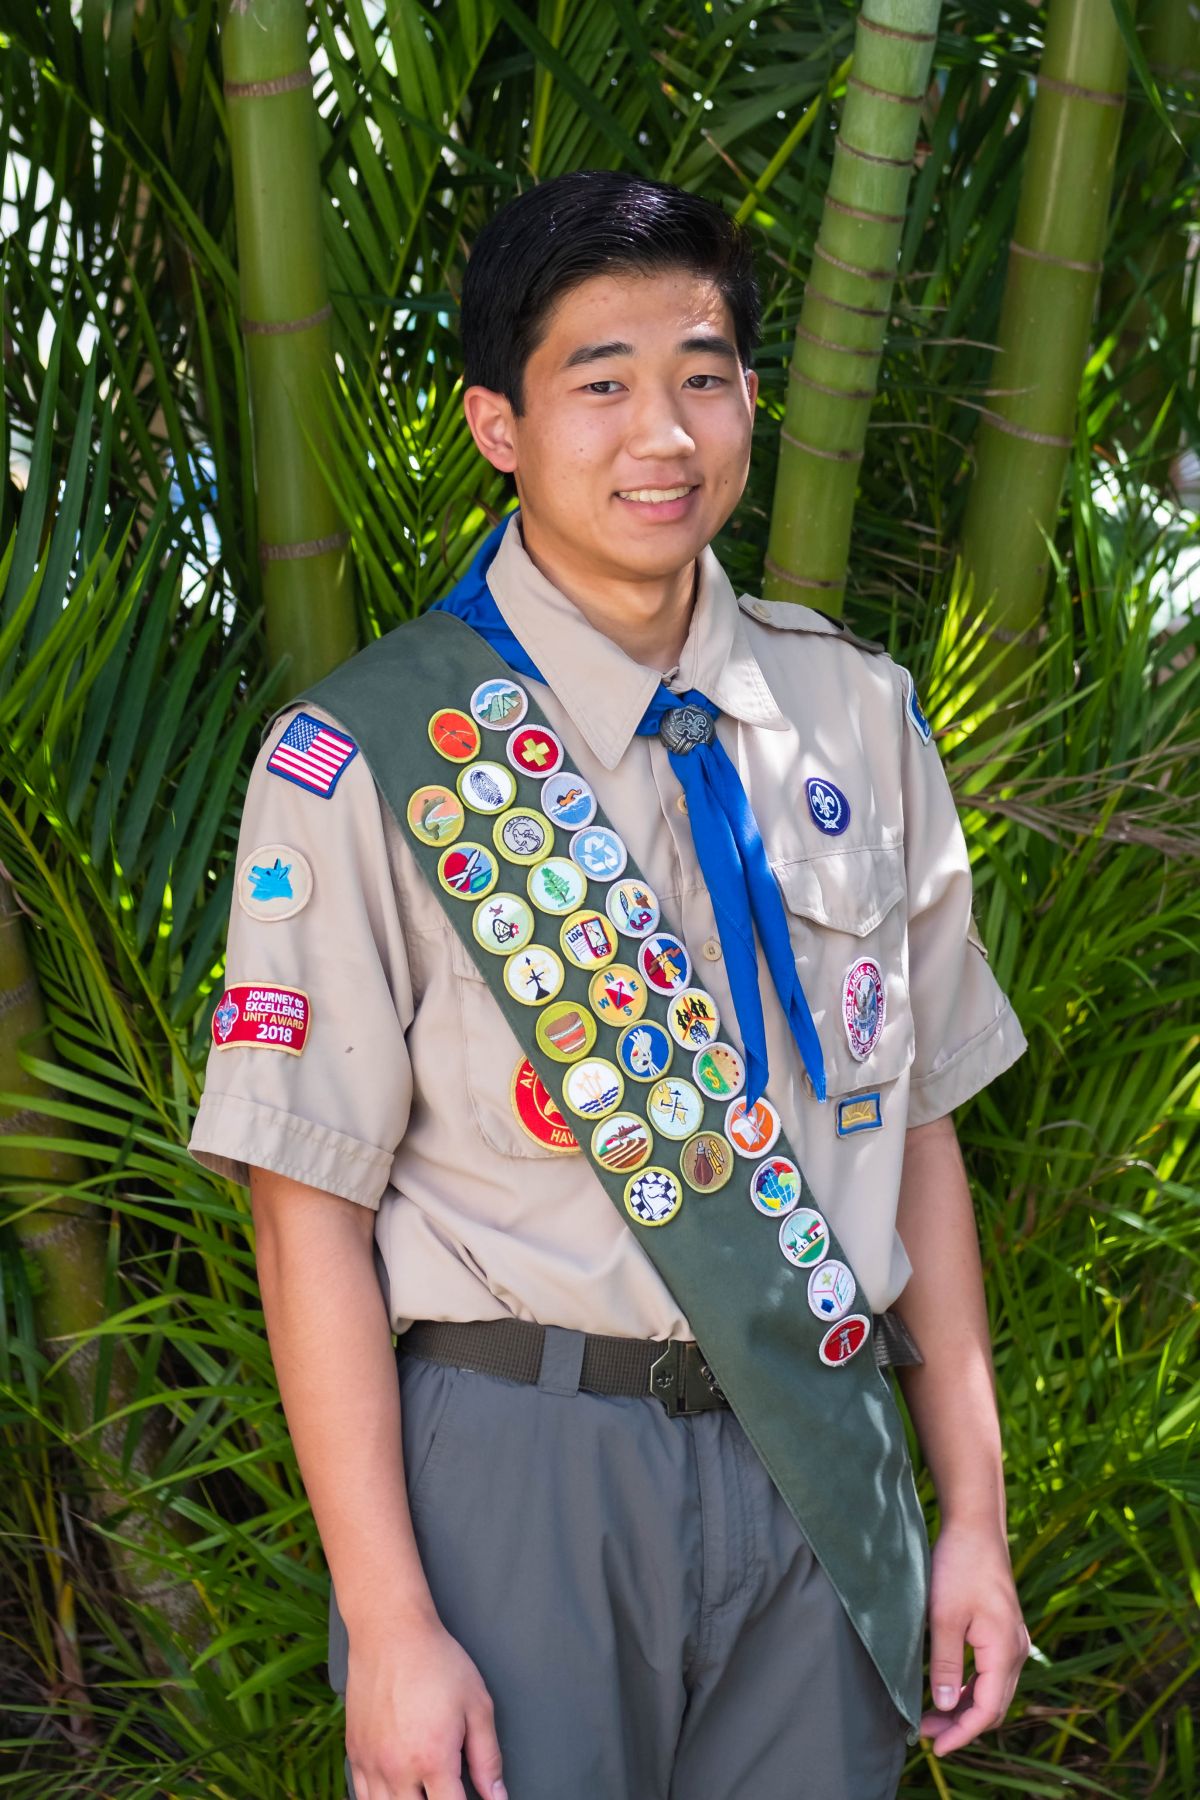 2020 2 23 Eagle Scout Portraits Jason 